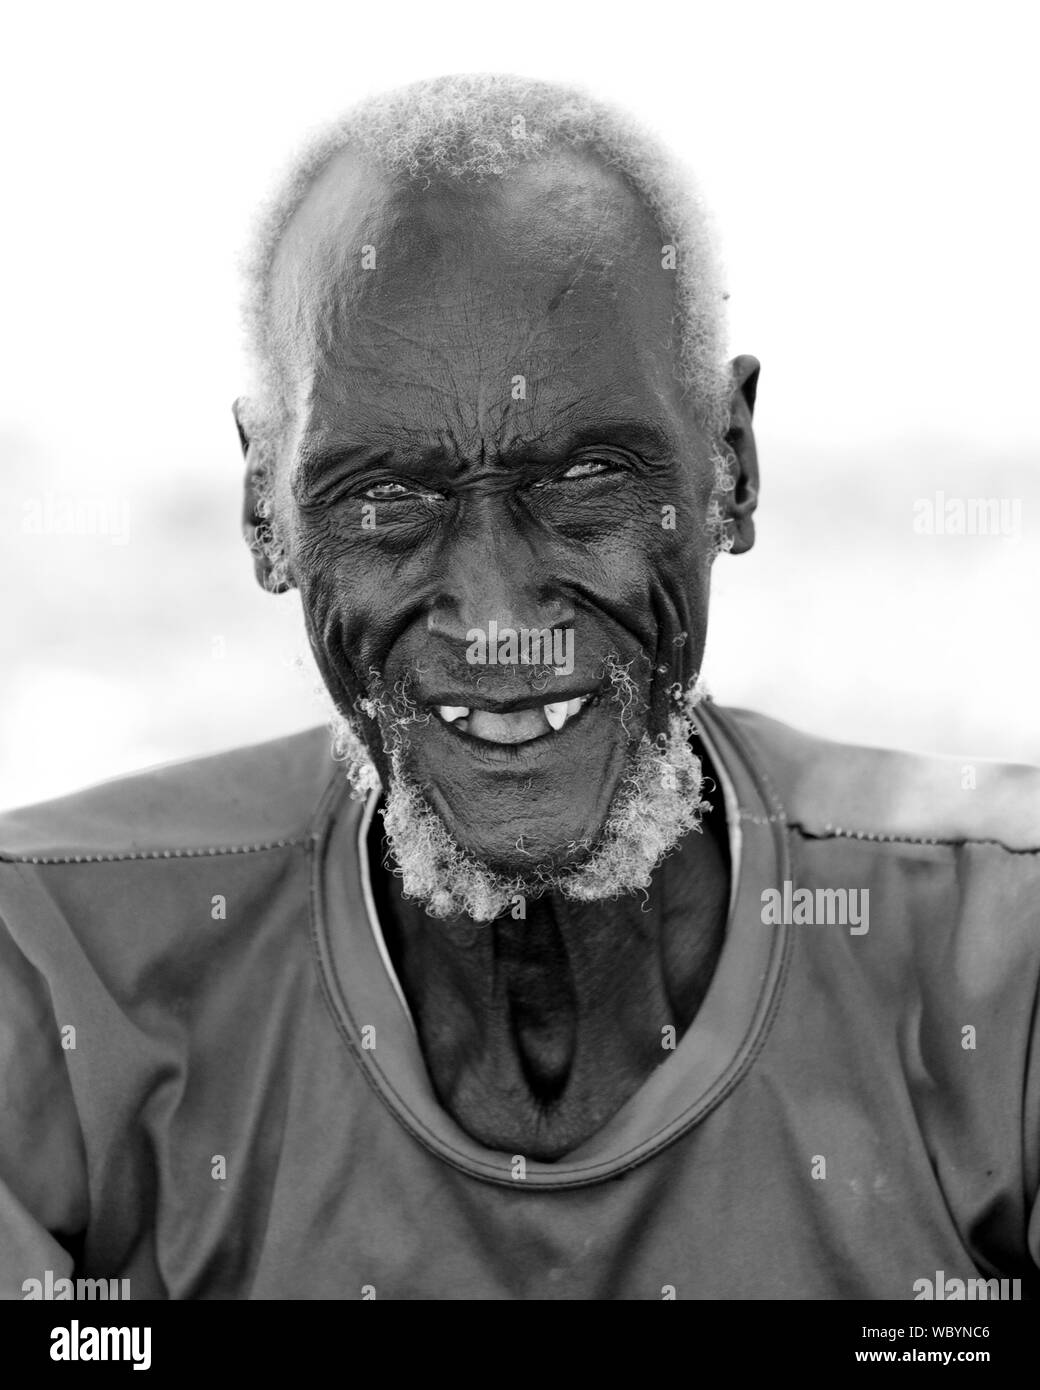 PANWELL, SOUTH SUDAN - Dezember 4, 2010: Portrait eines nicht identifizierten Mann der Dinka Stamm im ländlichen Süden des Sudan. Stockfoto